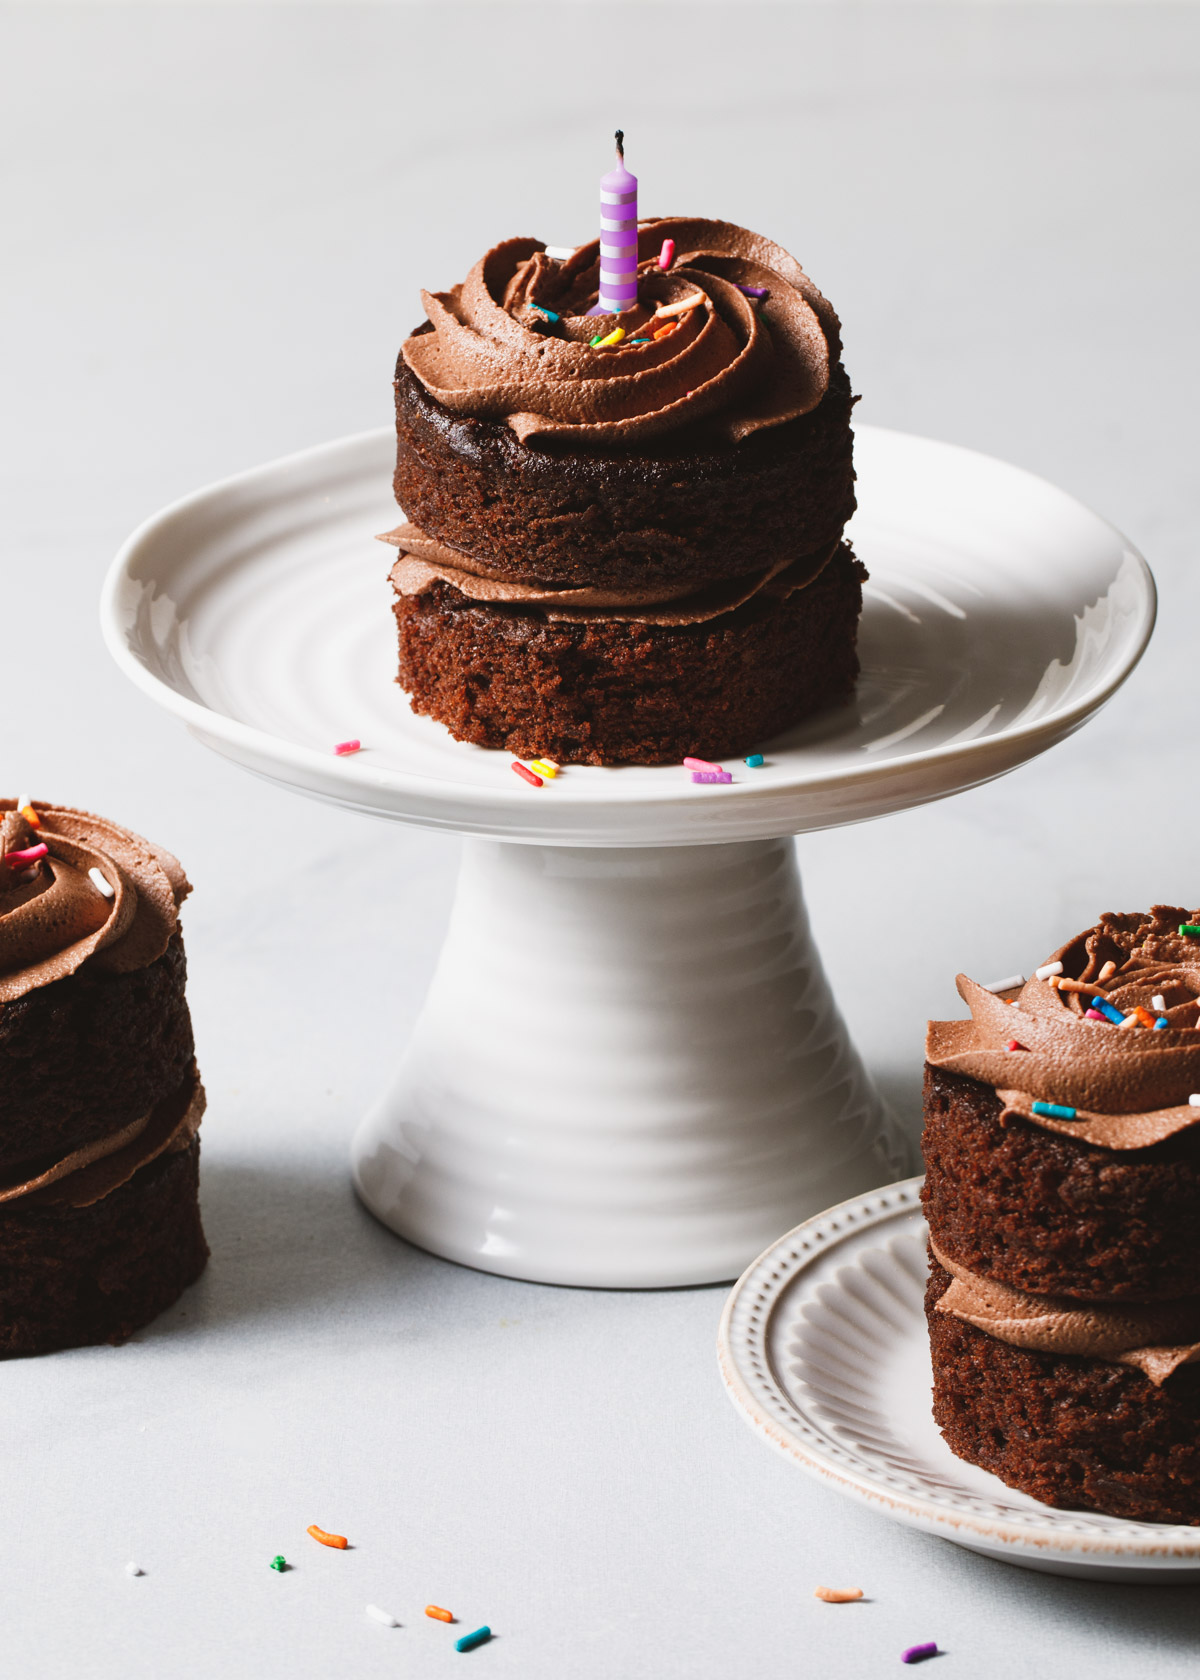 Three mini chocolate cakes on a white cake stand